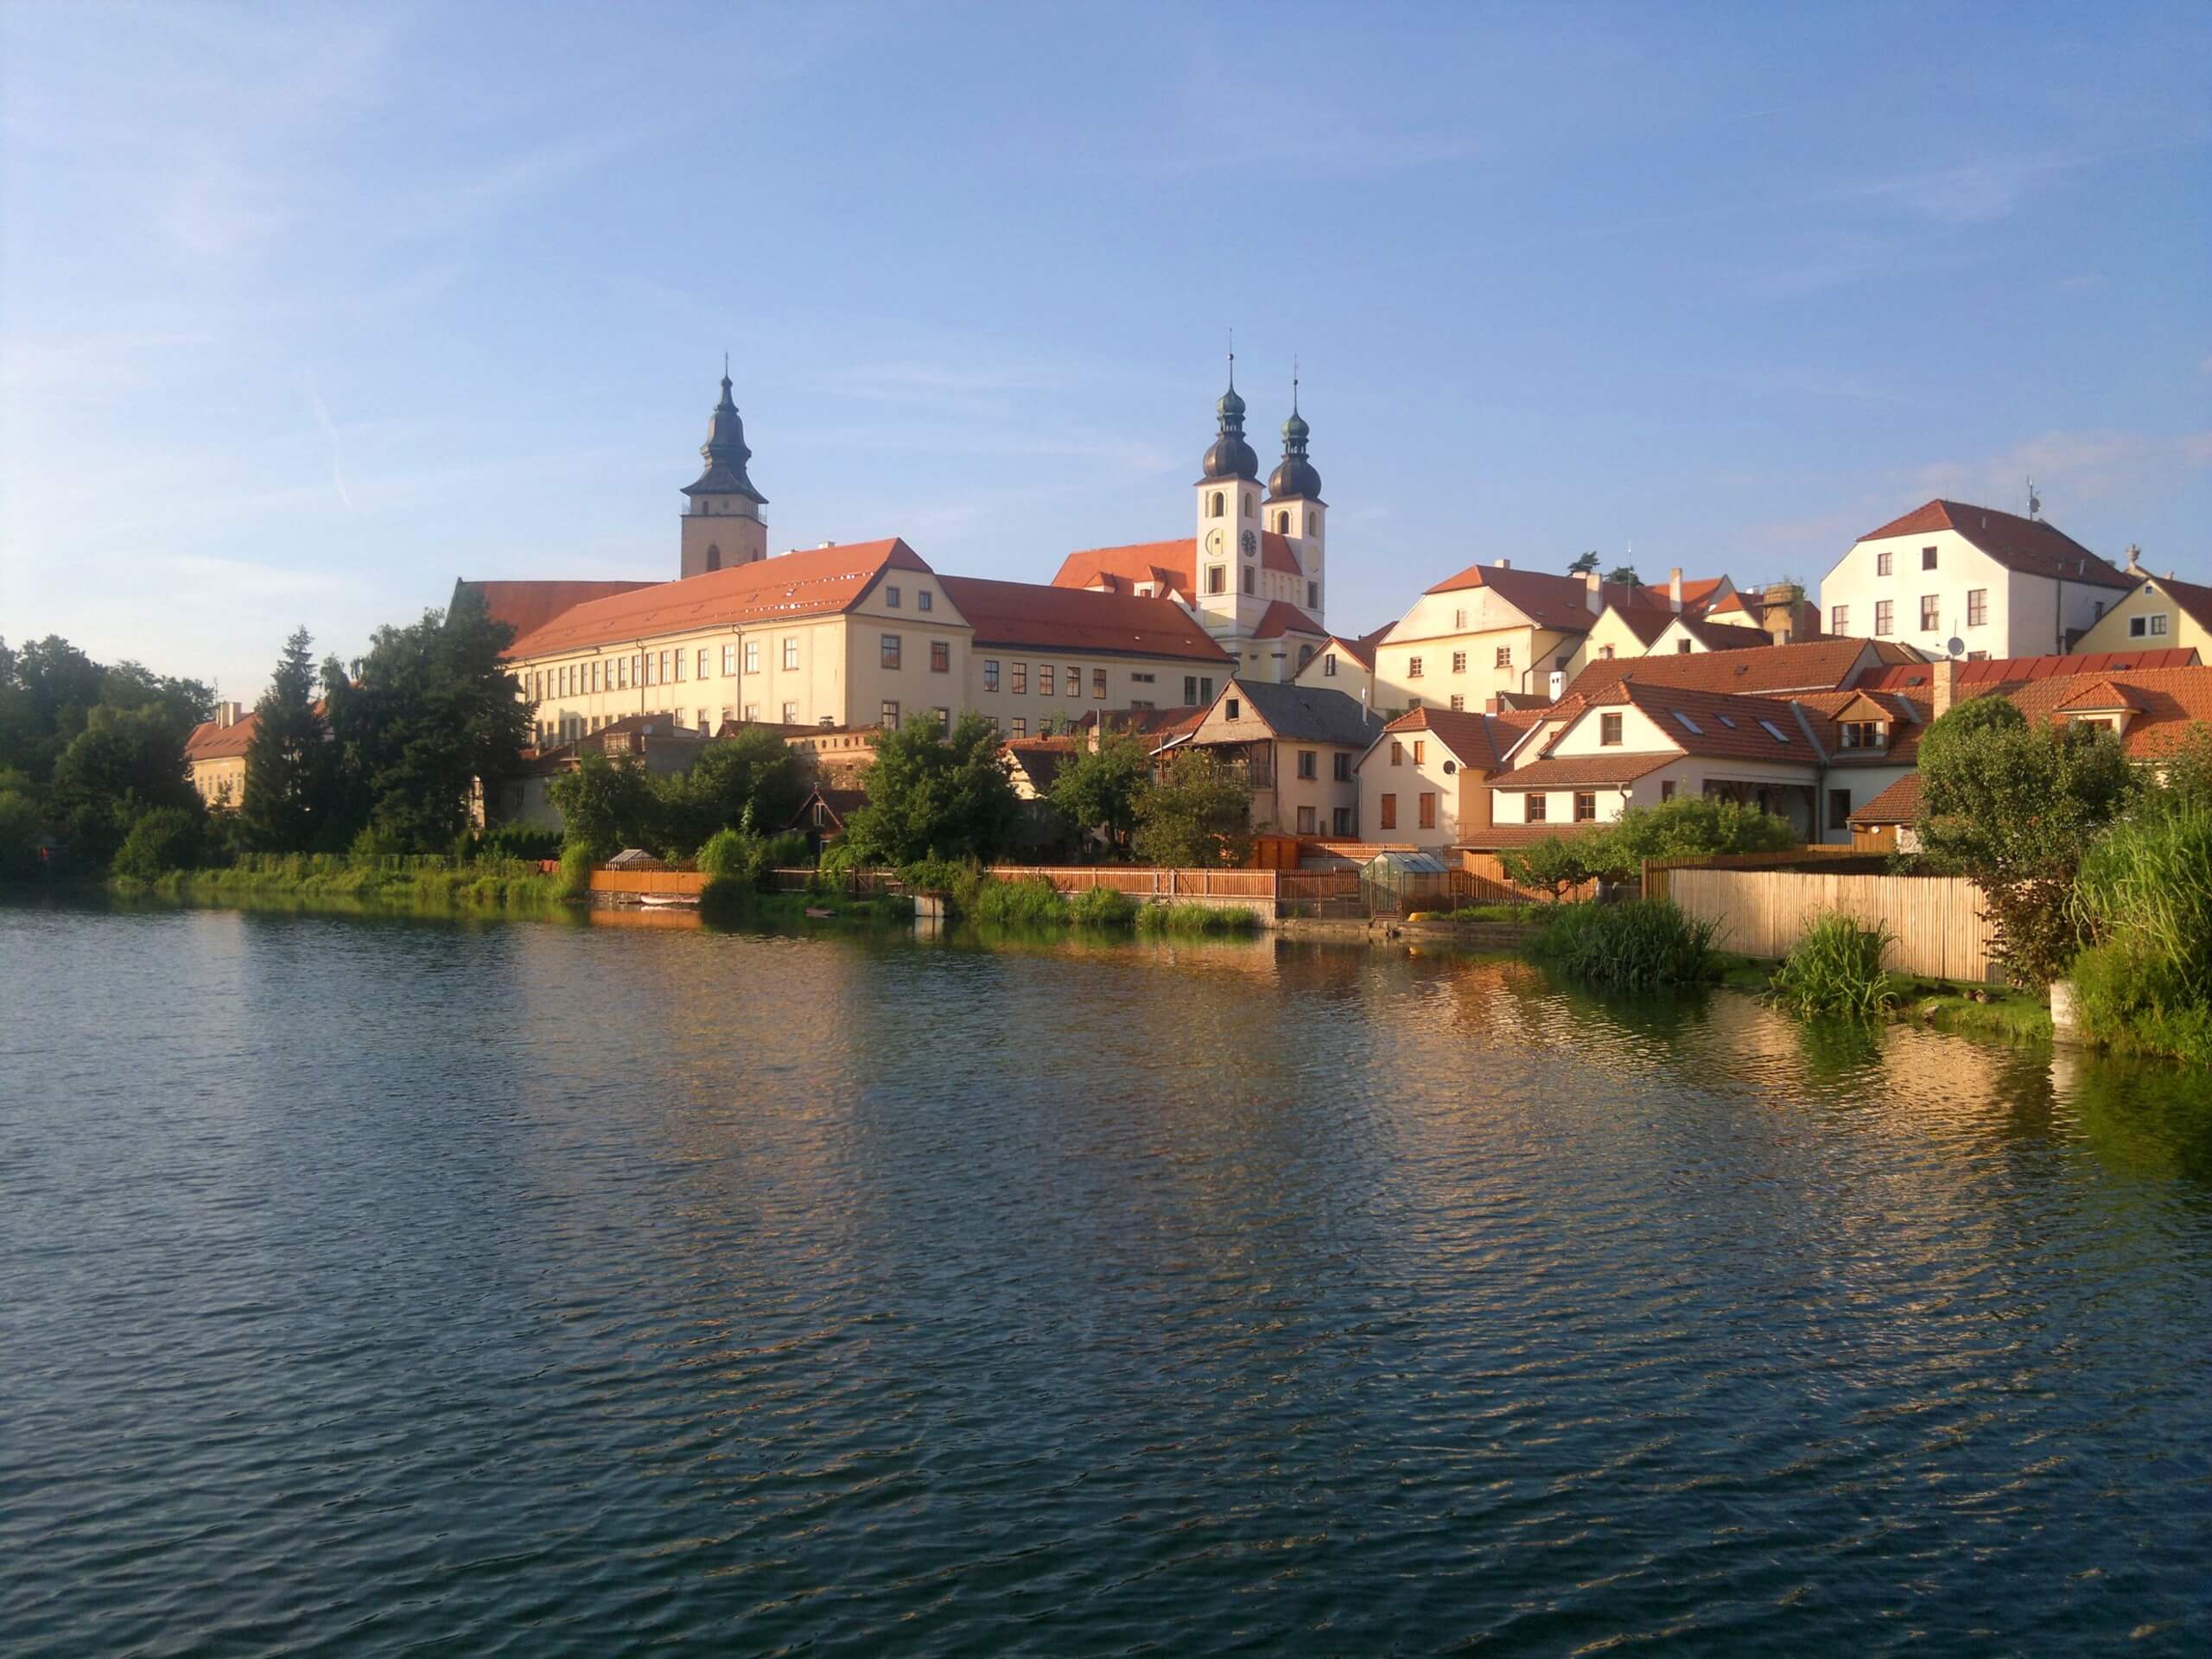 Trebic in Czech Republic